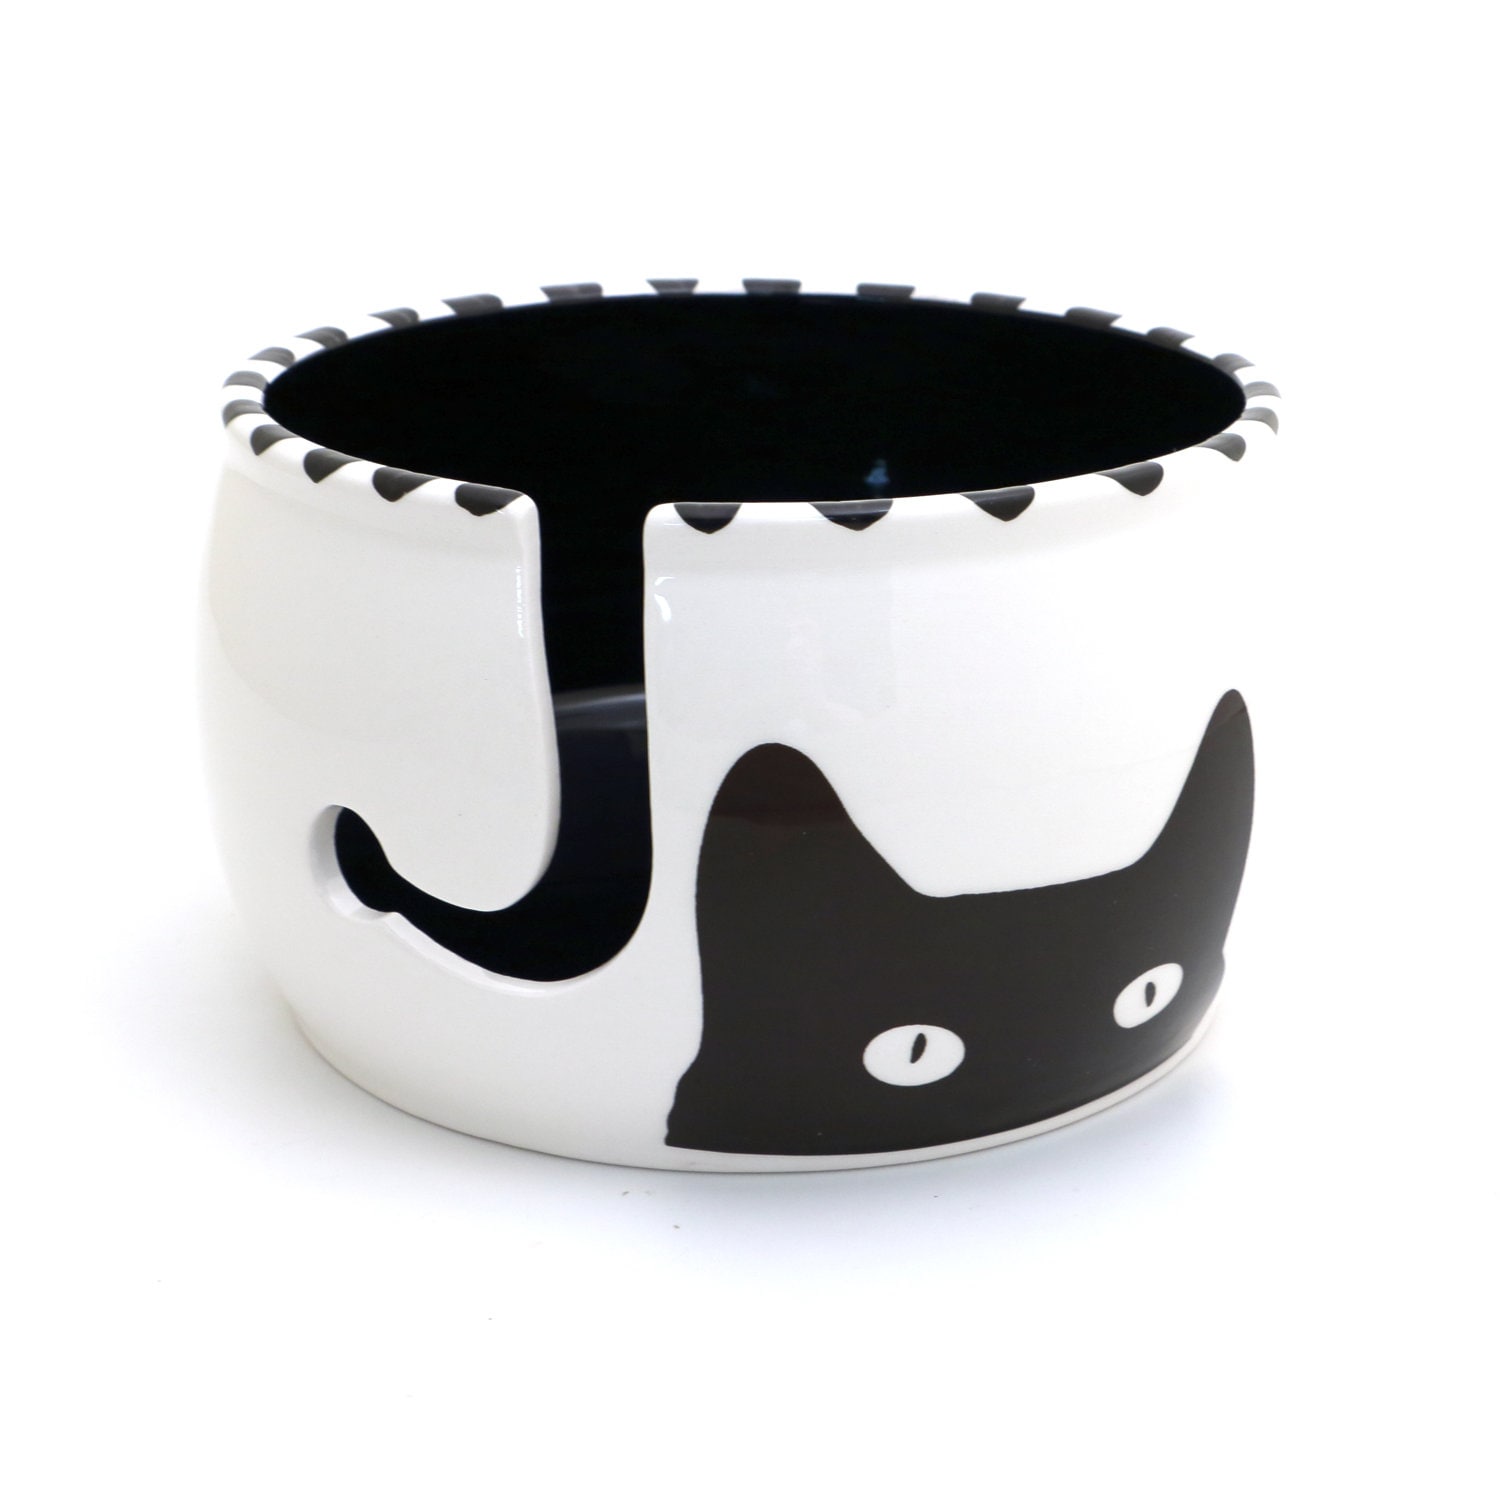 Calico Cat Yarn Bowl -   Ceramic yarn bowl, Yarn bowl, Clay crafts